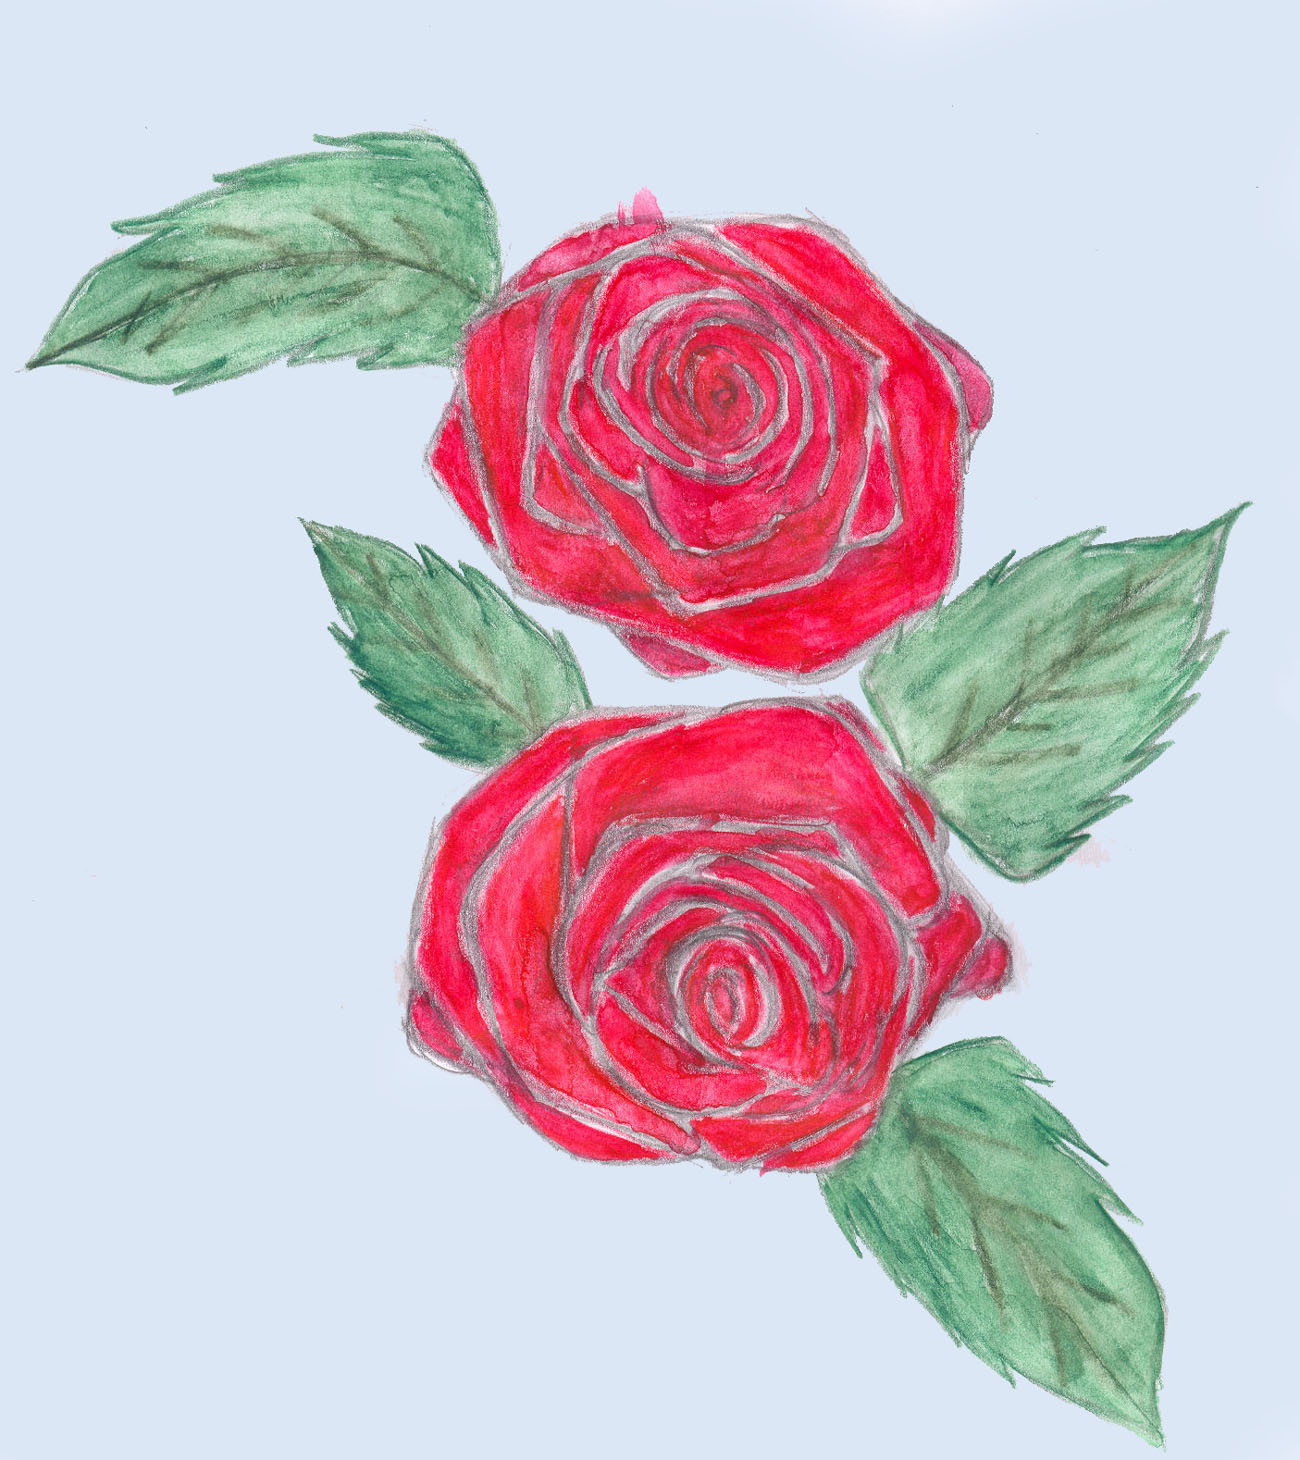 Simple Rose by Yeslen-Muurlas